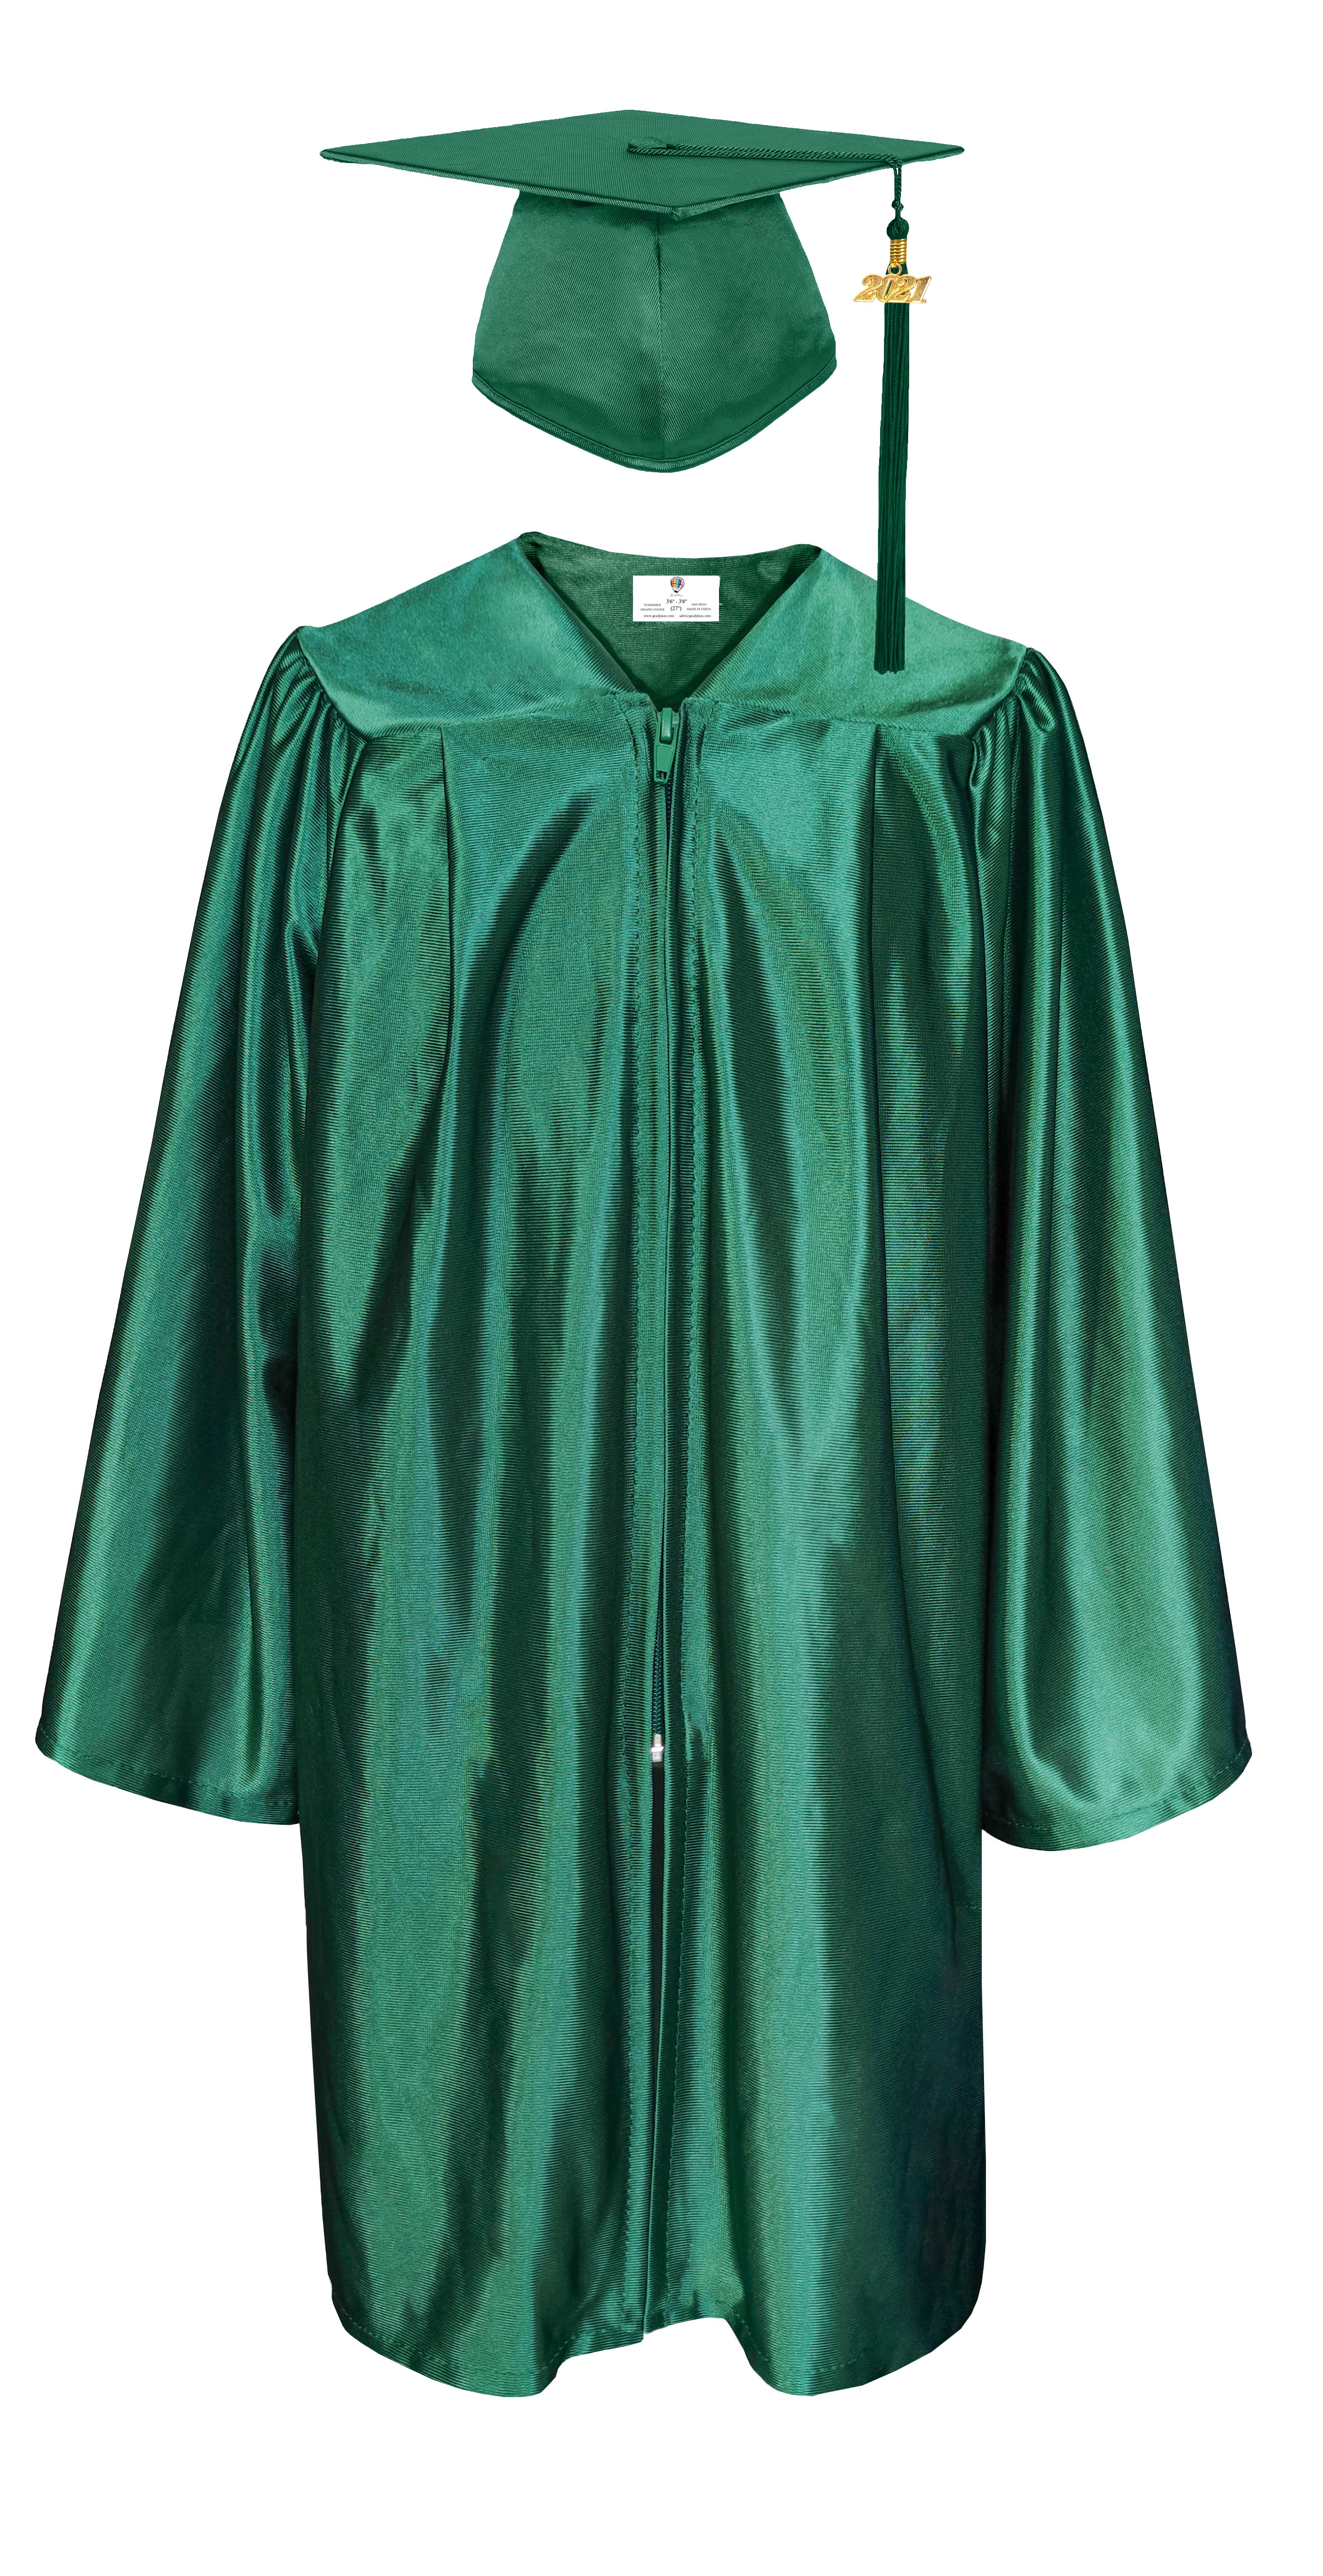 Shiny Emerald Green High School Cap & Tassel - Graduation Caps – Graduation  Cap and Gown